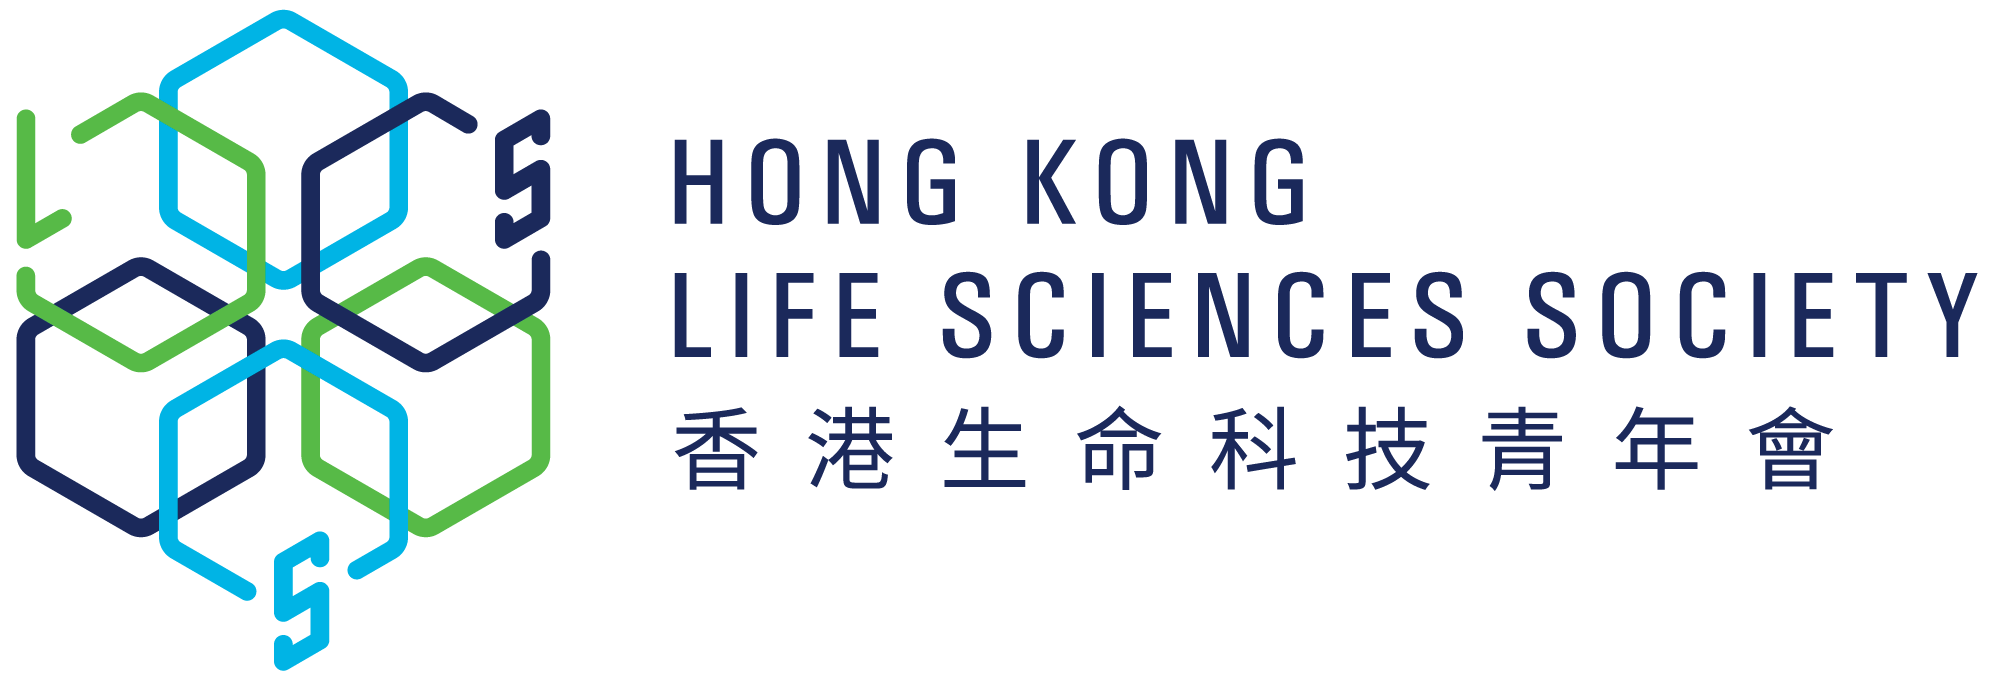 Hong Kong Life Sciences Society Logo